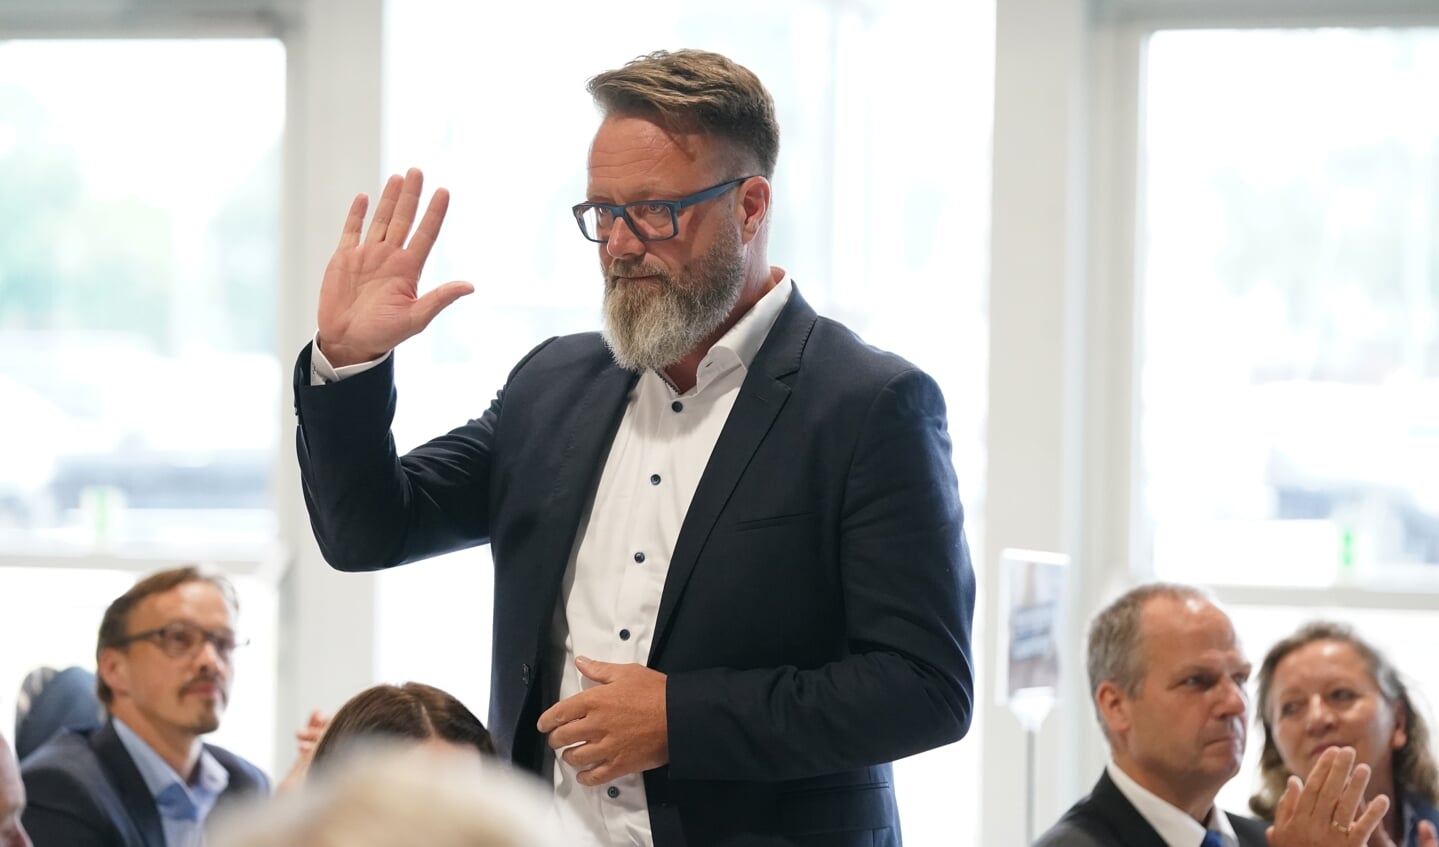 Rostocks danske overborgmester Claus Ruhe Madsen bliver Slesvig-Holstens nye minister for erhverv, trafik, arbejde, teknologi og turisme.